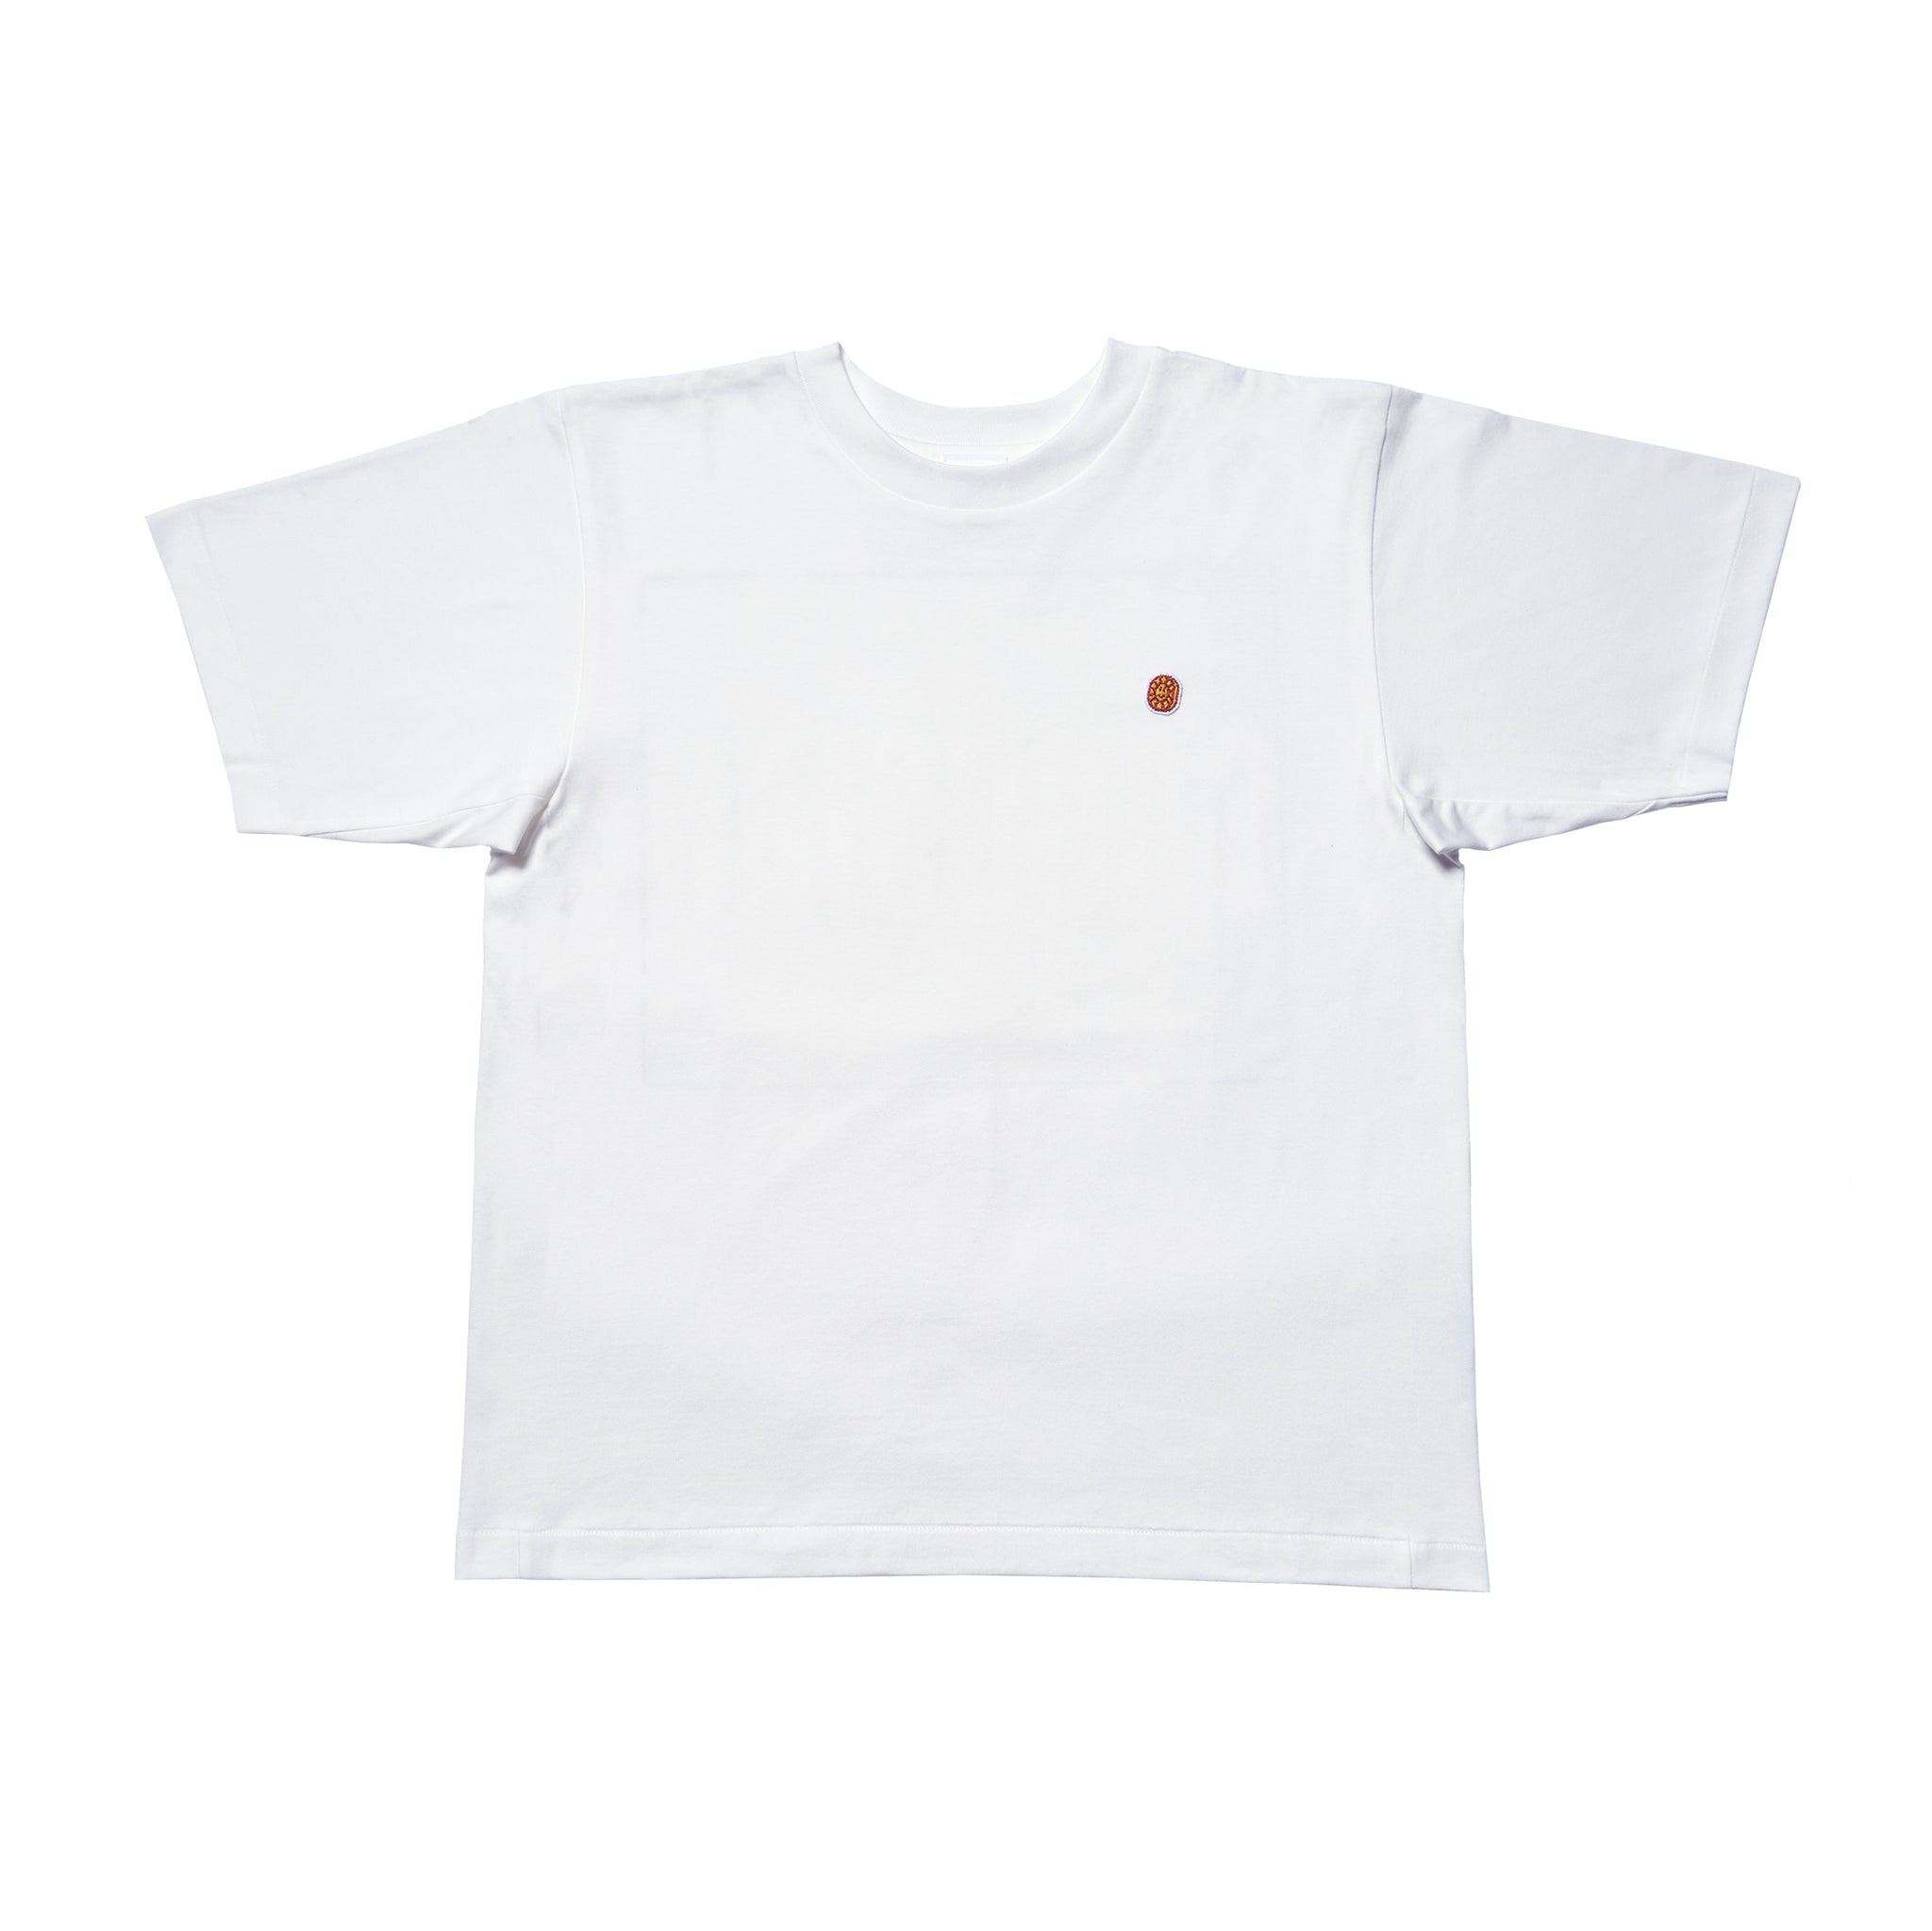 Takashi Murakami × Gagosian Flower Jet Coin T-shirt | Gagosian Shop